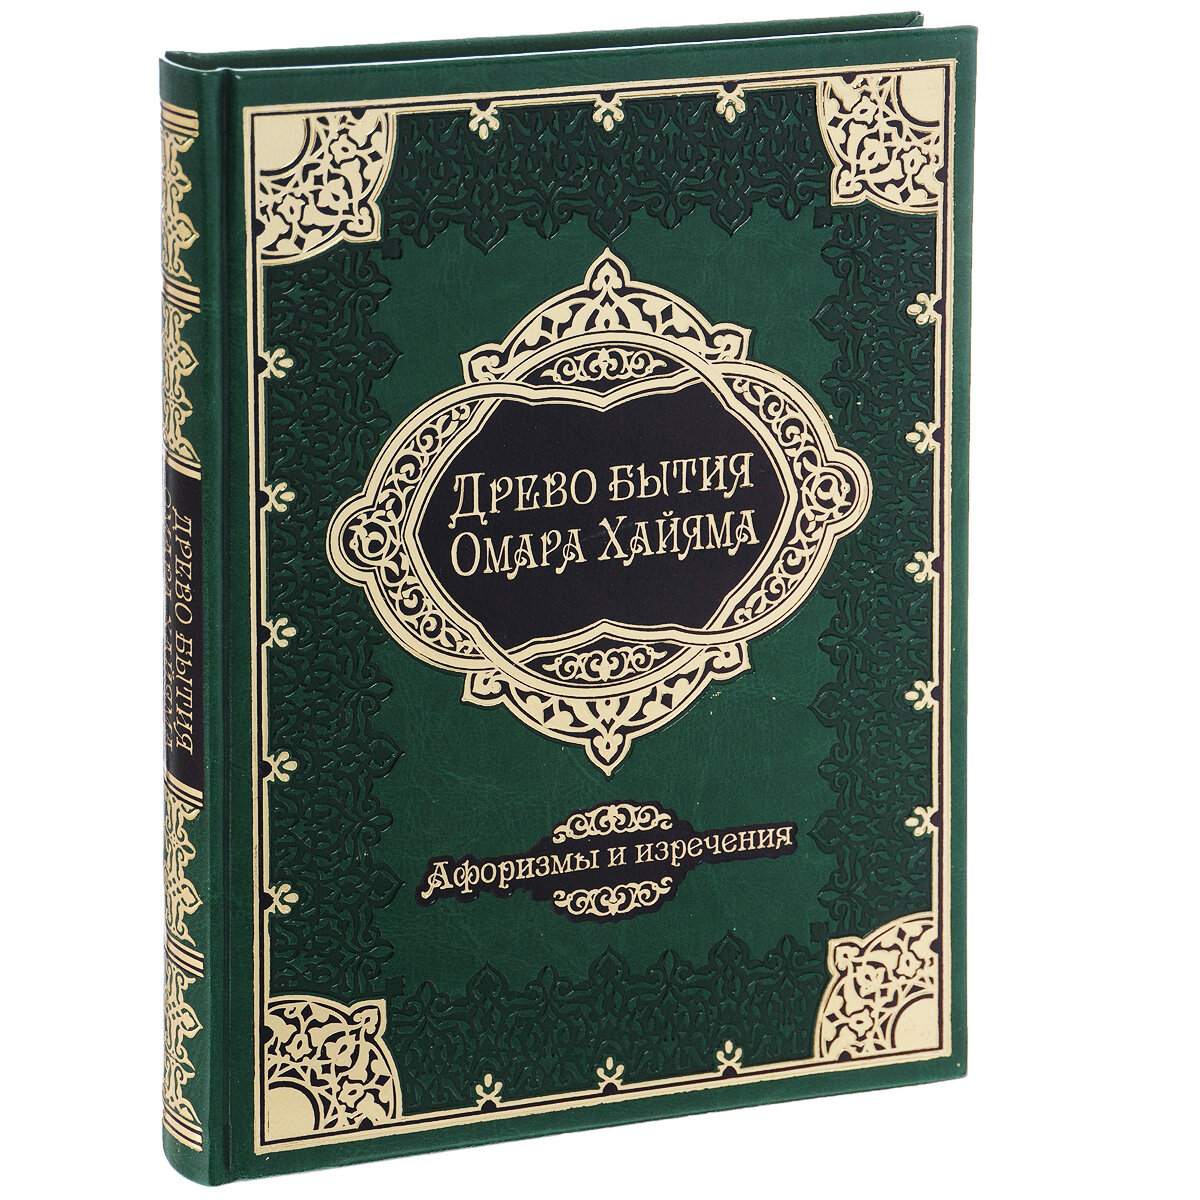 Древо бытия Омара Хайяма. 1000 афоризмов, изречений и высказываний выдающегося врача и математика, гениального философа и самого знаменитого поэта